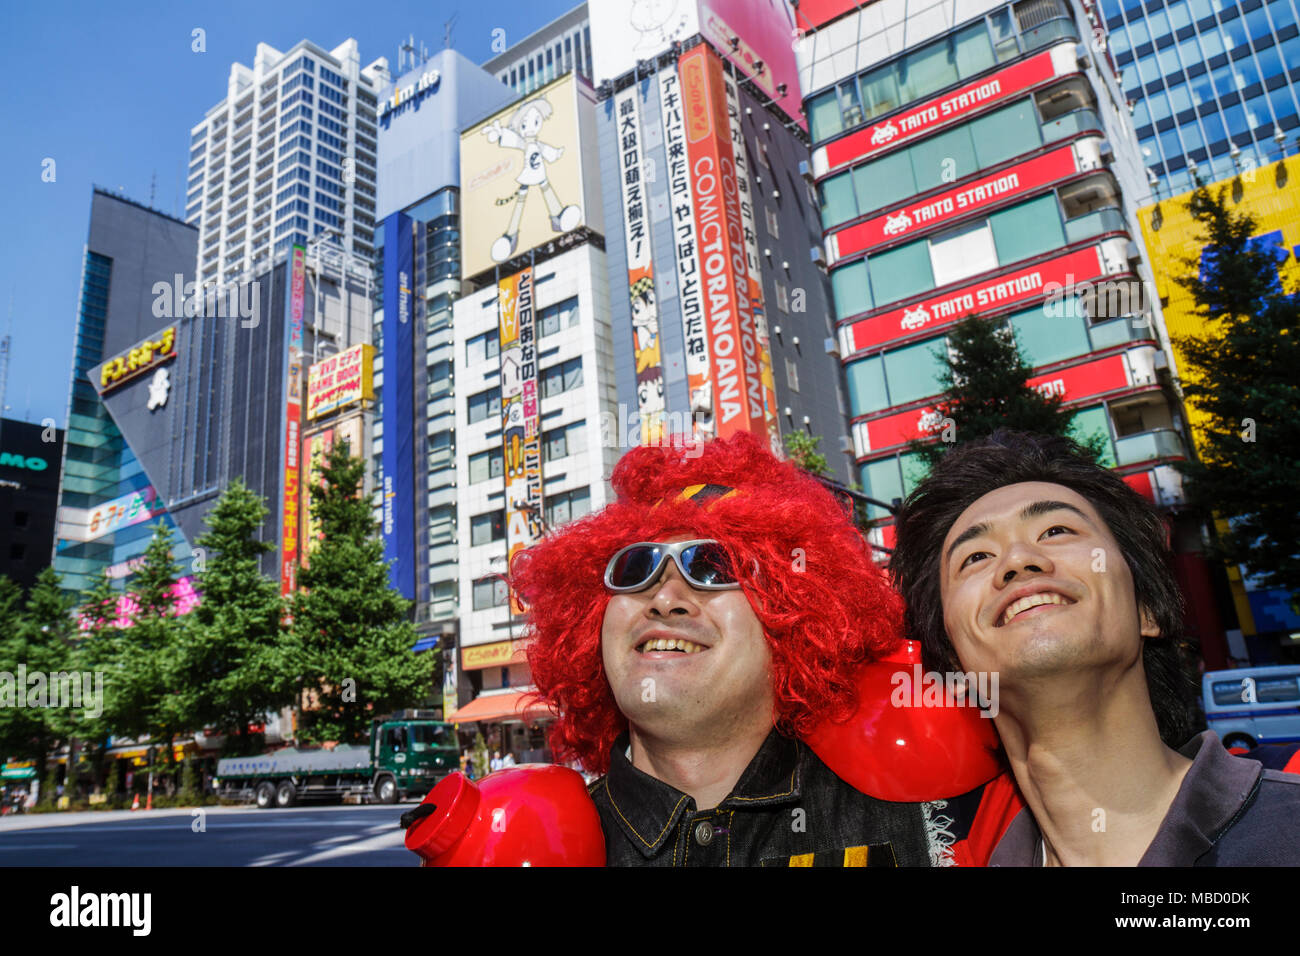 Tokyo Japon,Akihabara,Electric Town,Chuo Dori Street,kanji,japonais anglais,asiatique Oriental,homme hommes adultes,cosplay,jeu de costume,tenue,rouge W Banque D'Images